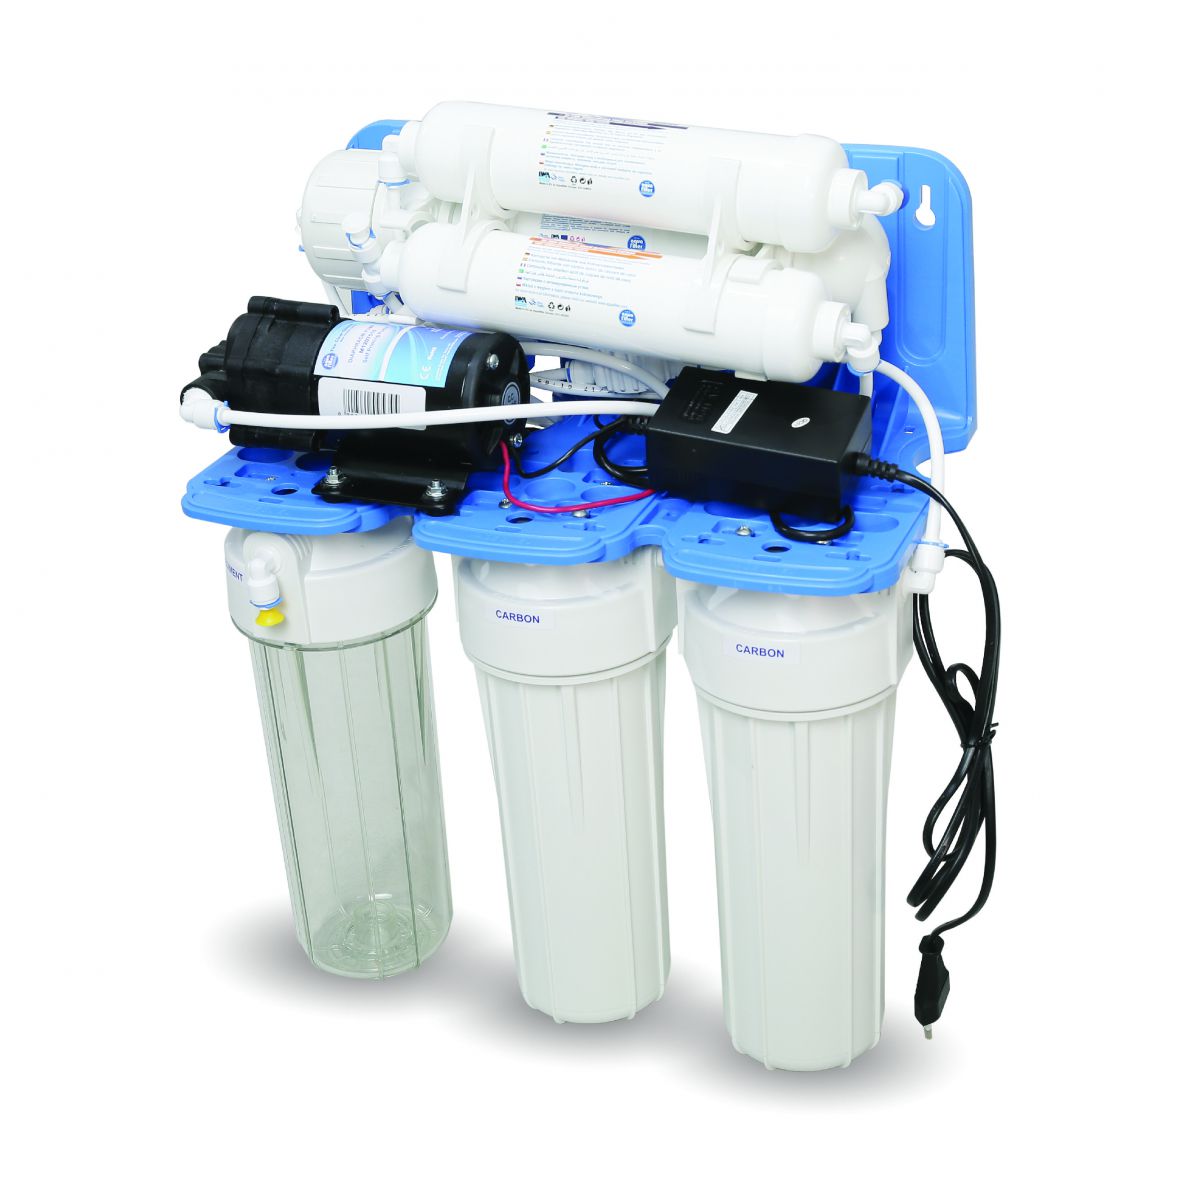 Máy lọc nước mini Aquafilter hiện là thương hiệu được người dùng ưa chuộng nhất hiện nay